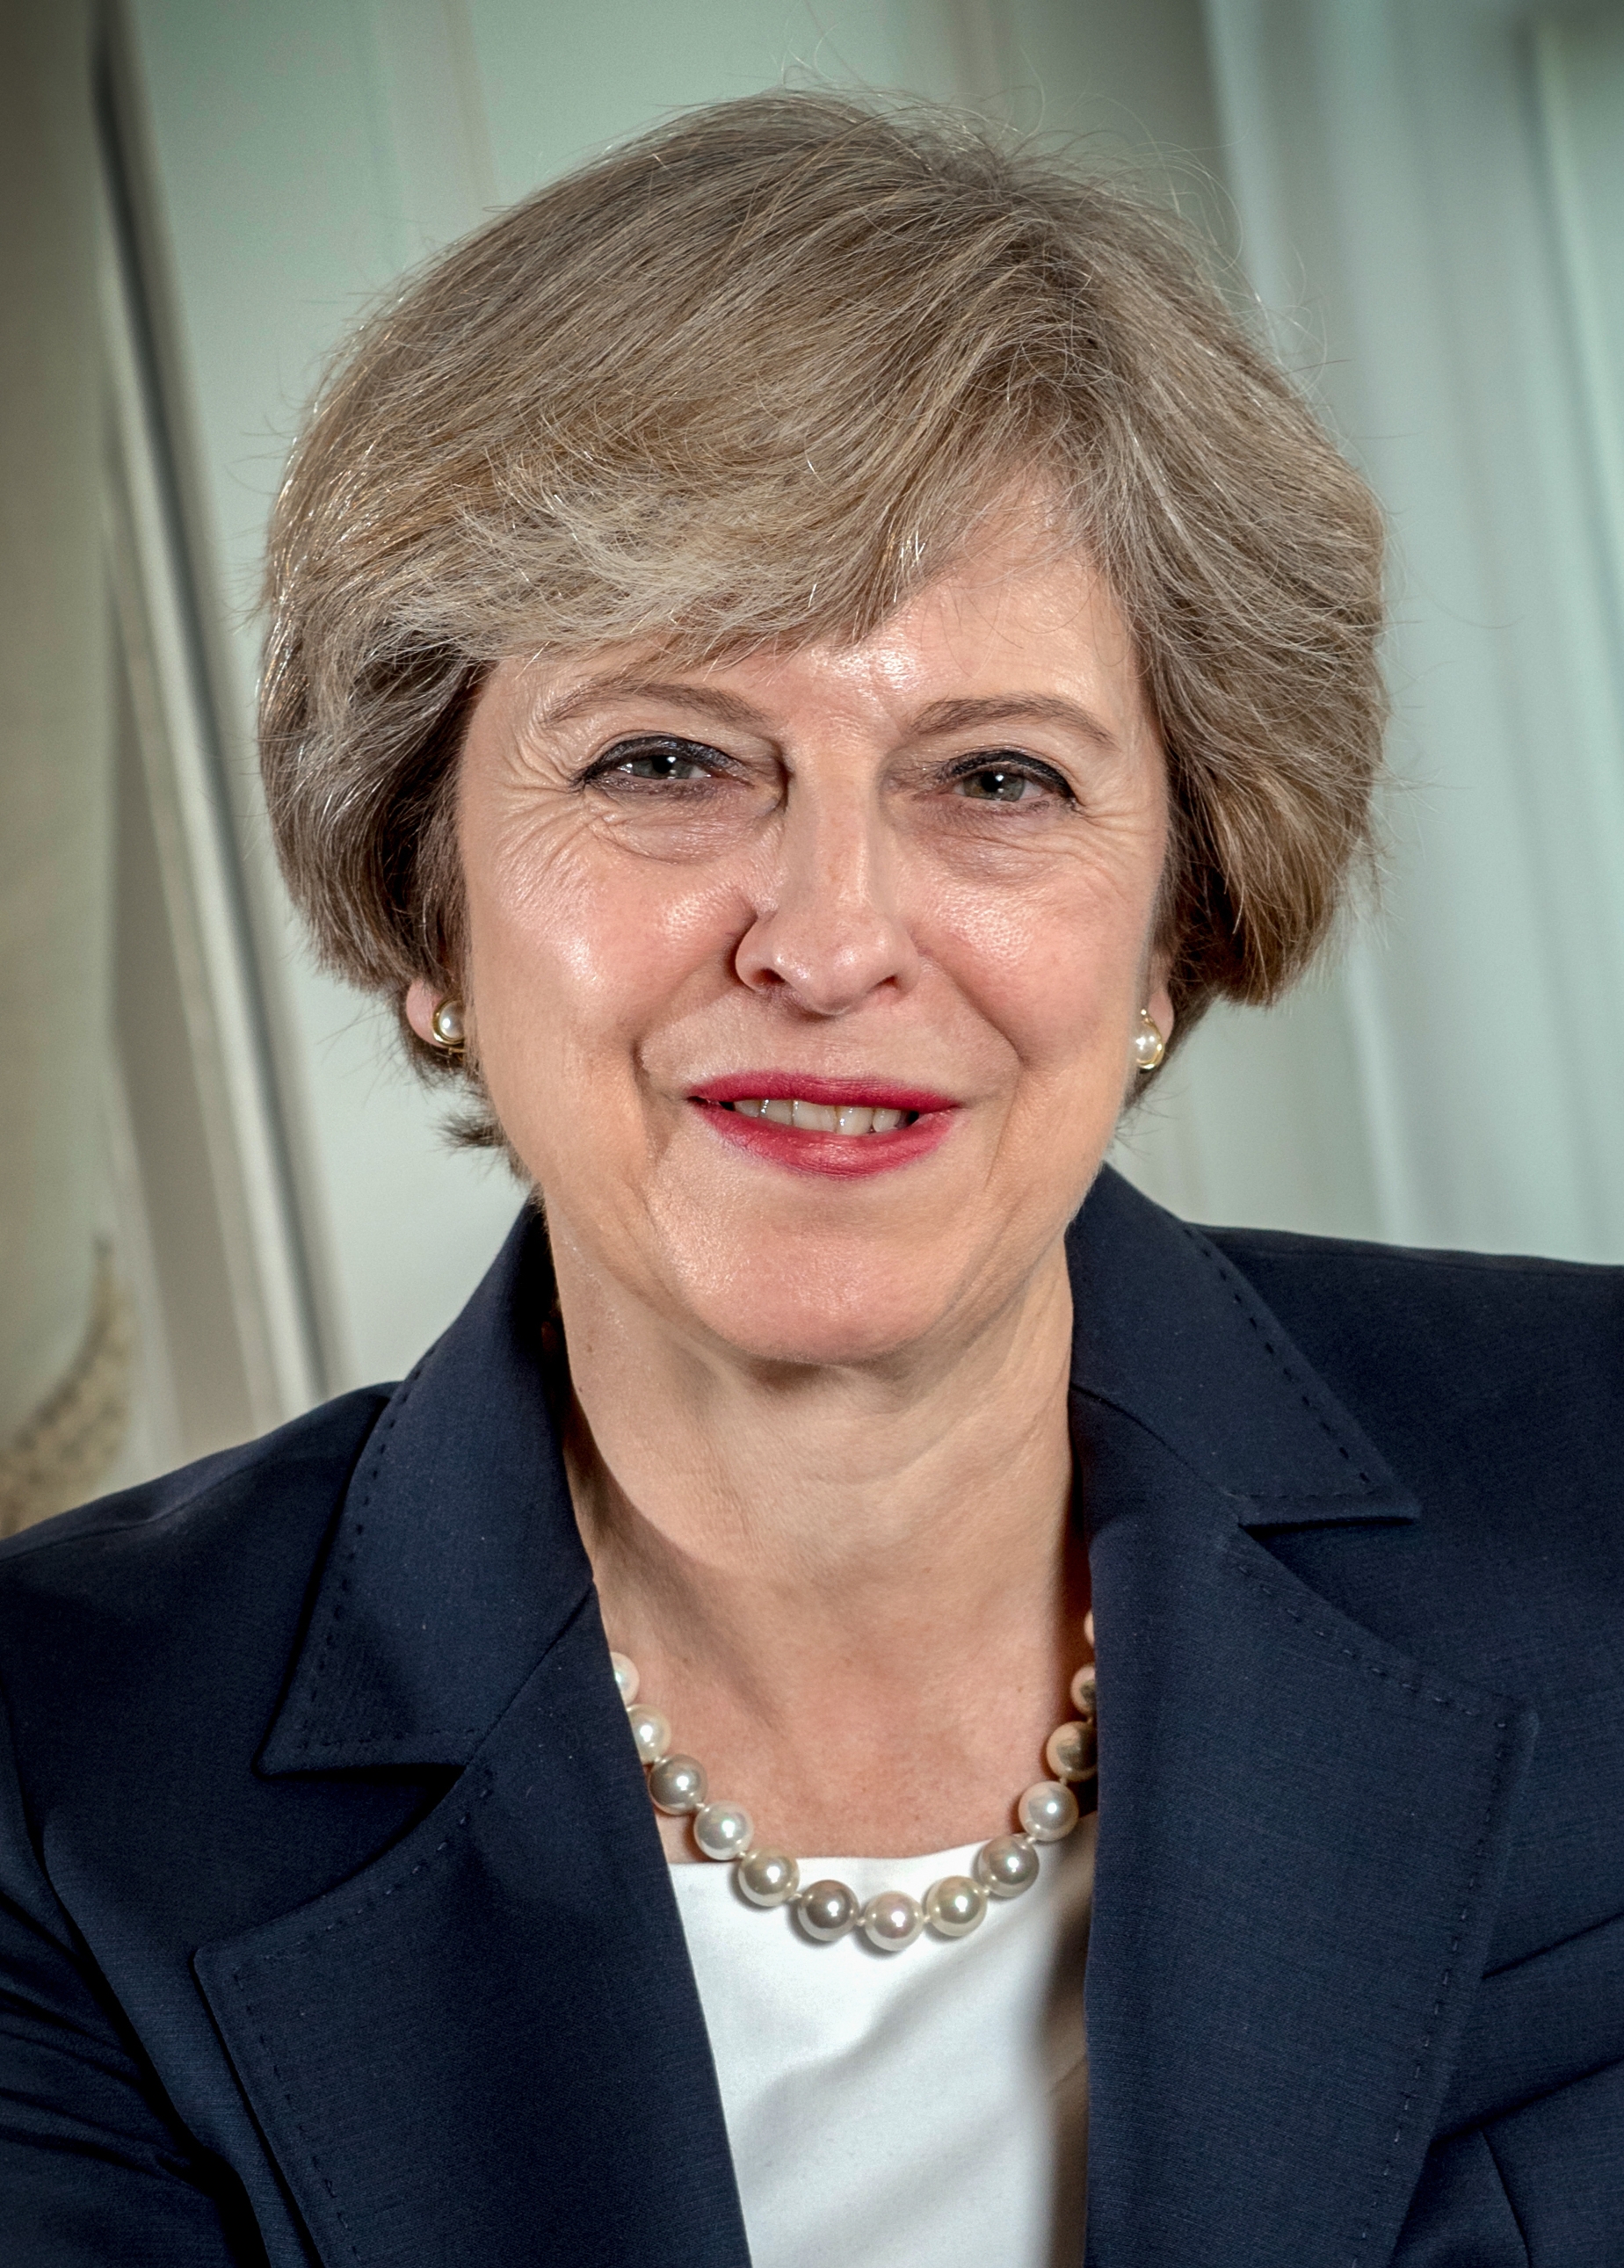 auteur Theresa May de la citation Les pays du monde entier agissent maintenant pour les aider à suivre les pédophiles et les terroristes qui abusent de nouvelles technologies pour tracer leurs horribles crimes.